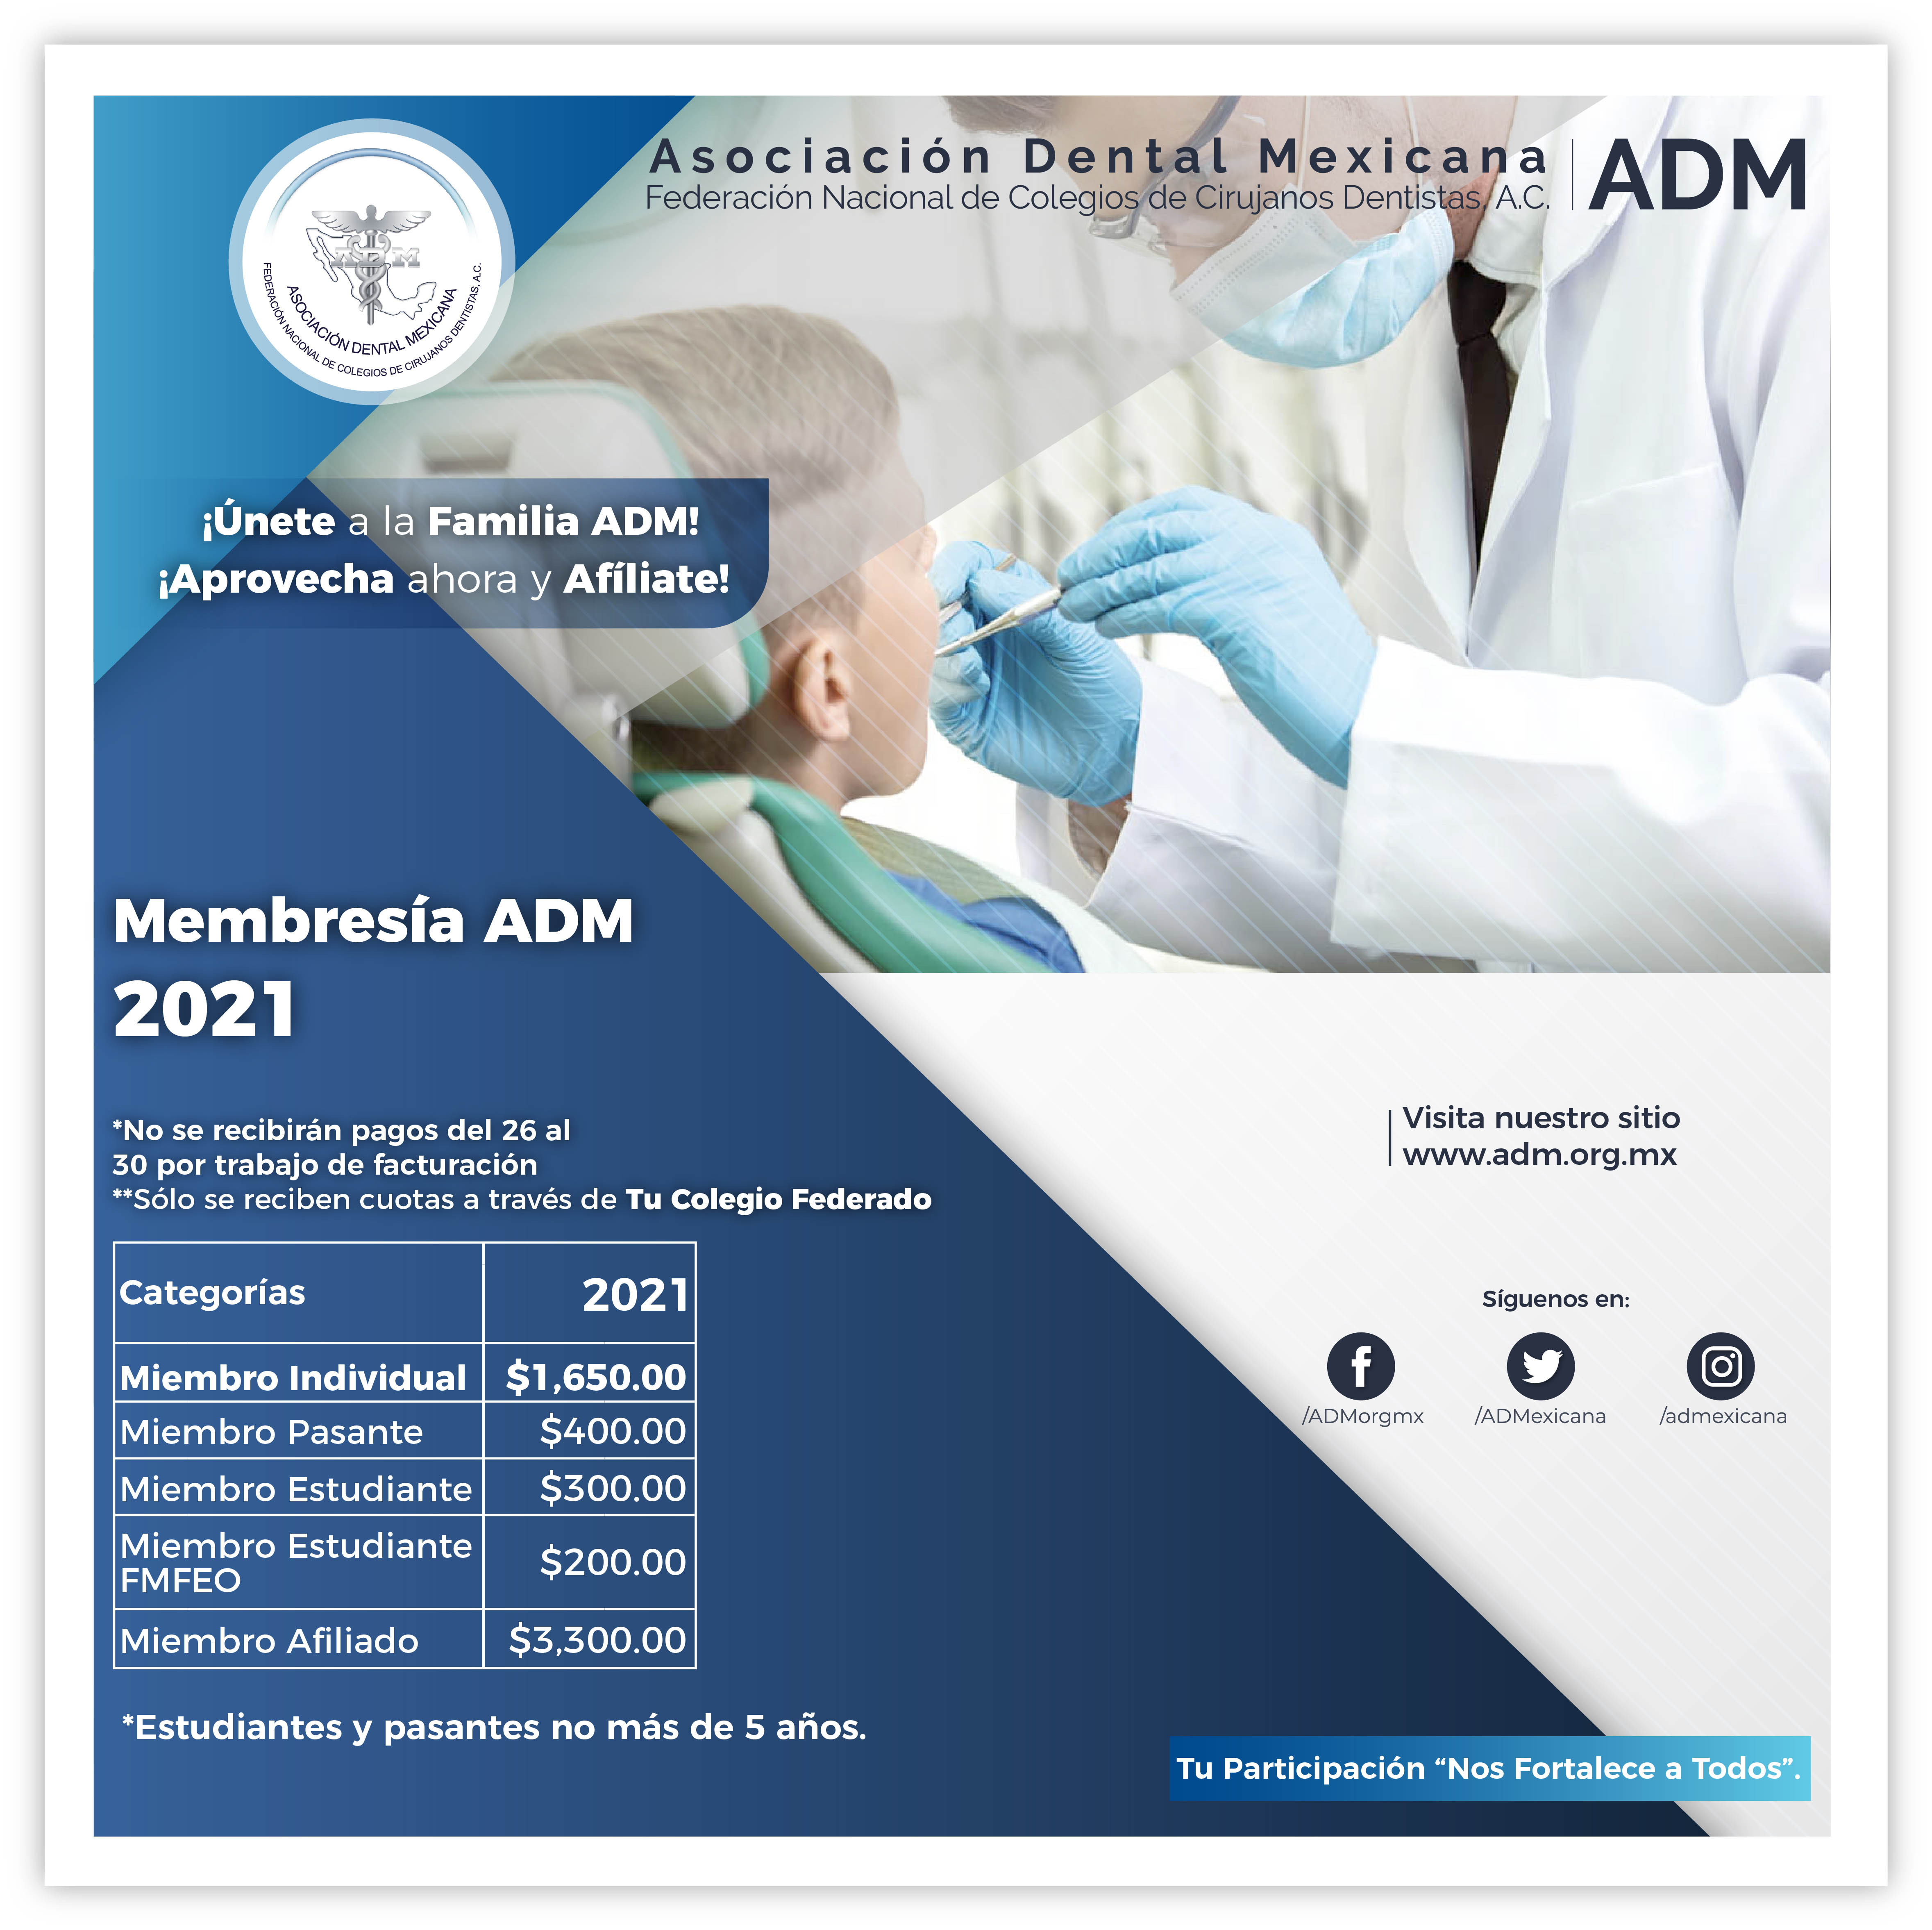 Membresía ADM 2021